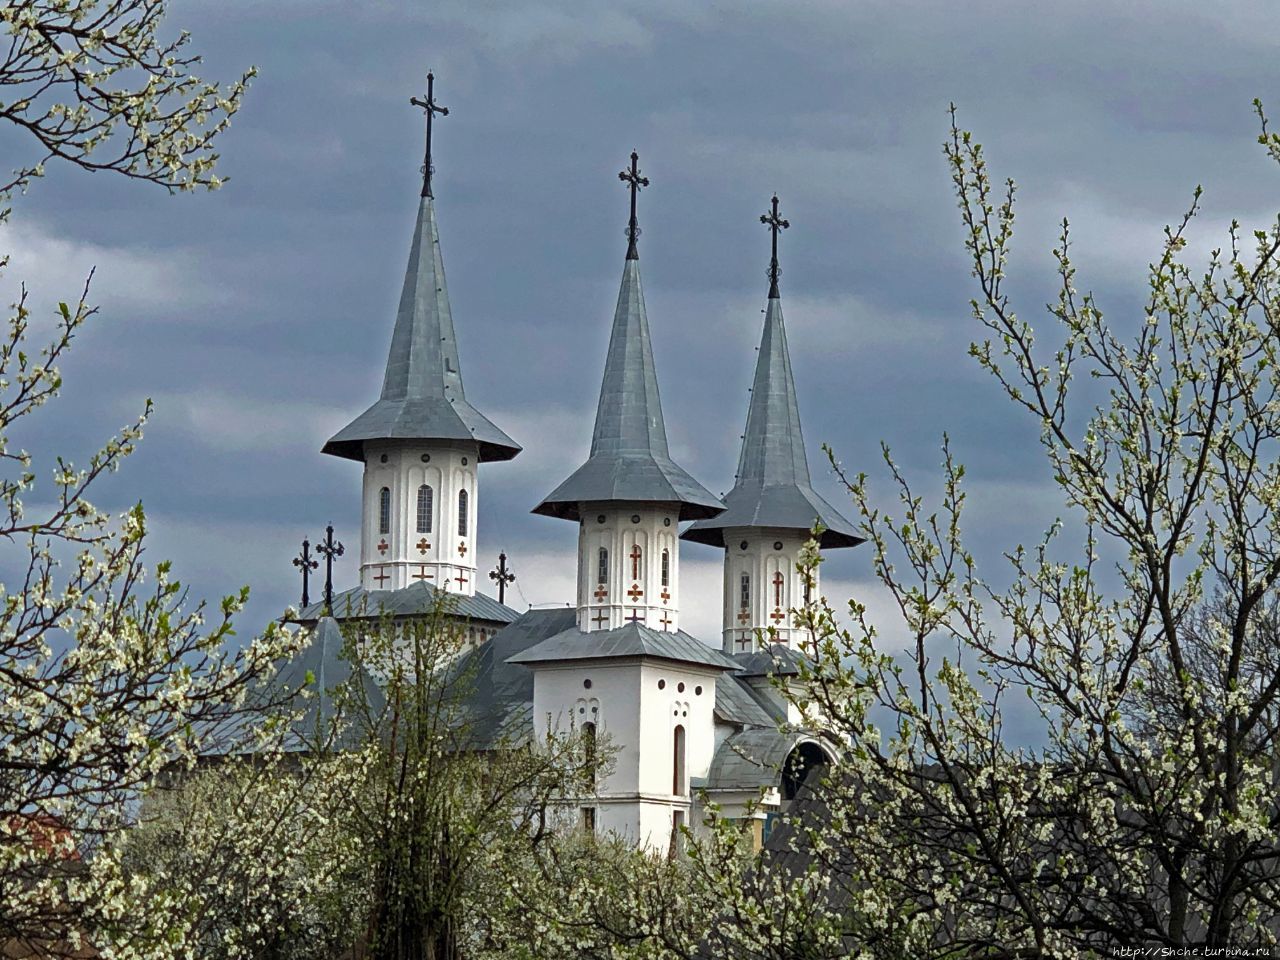 Церковь Святых Архангелов Рогоз, Румыния